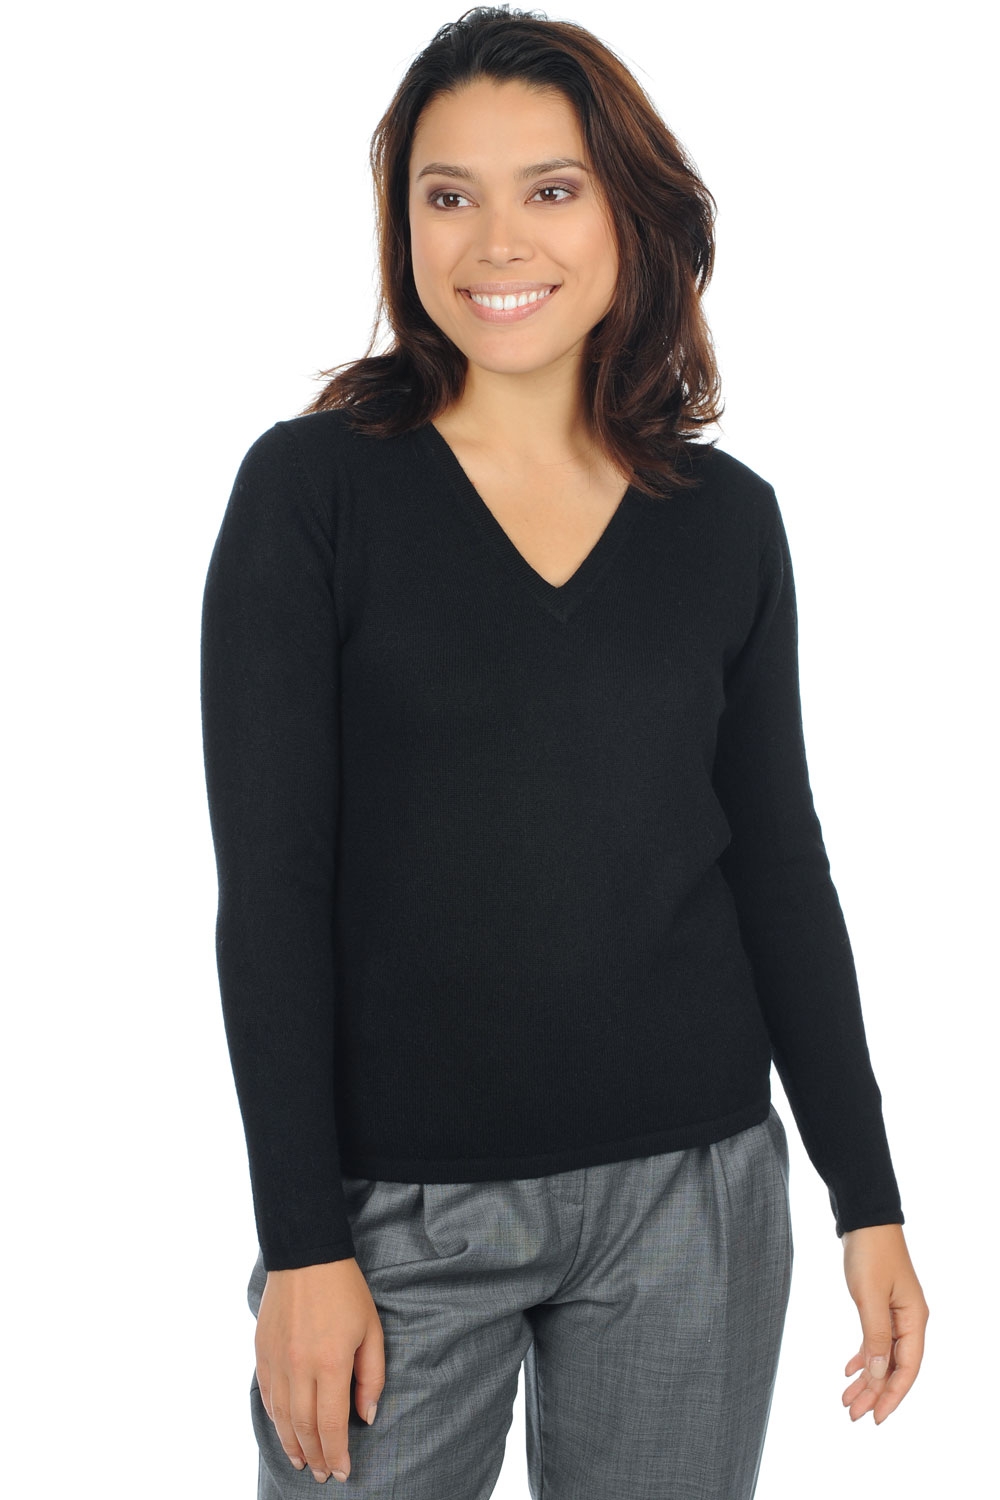 Cashmere ladies premium sweaters emma premium black xl